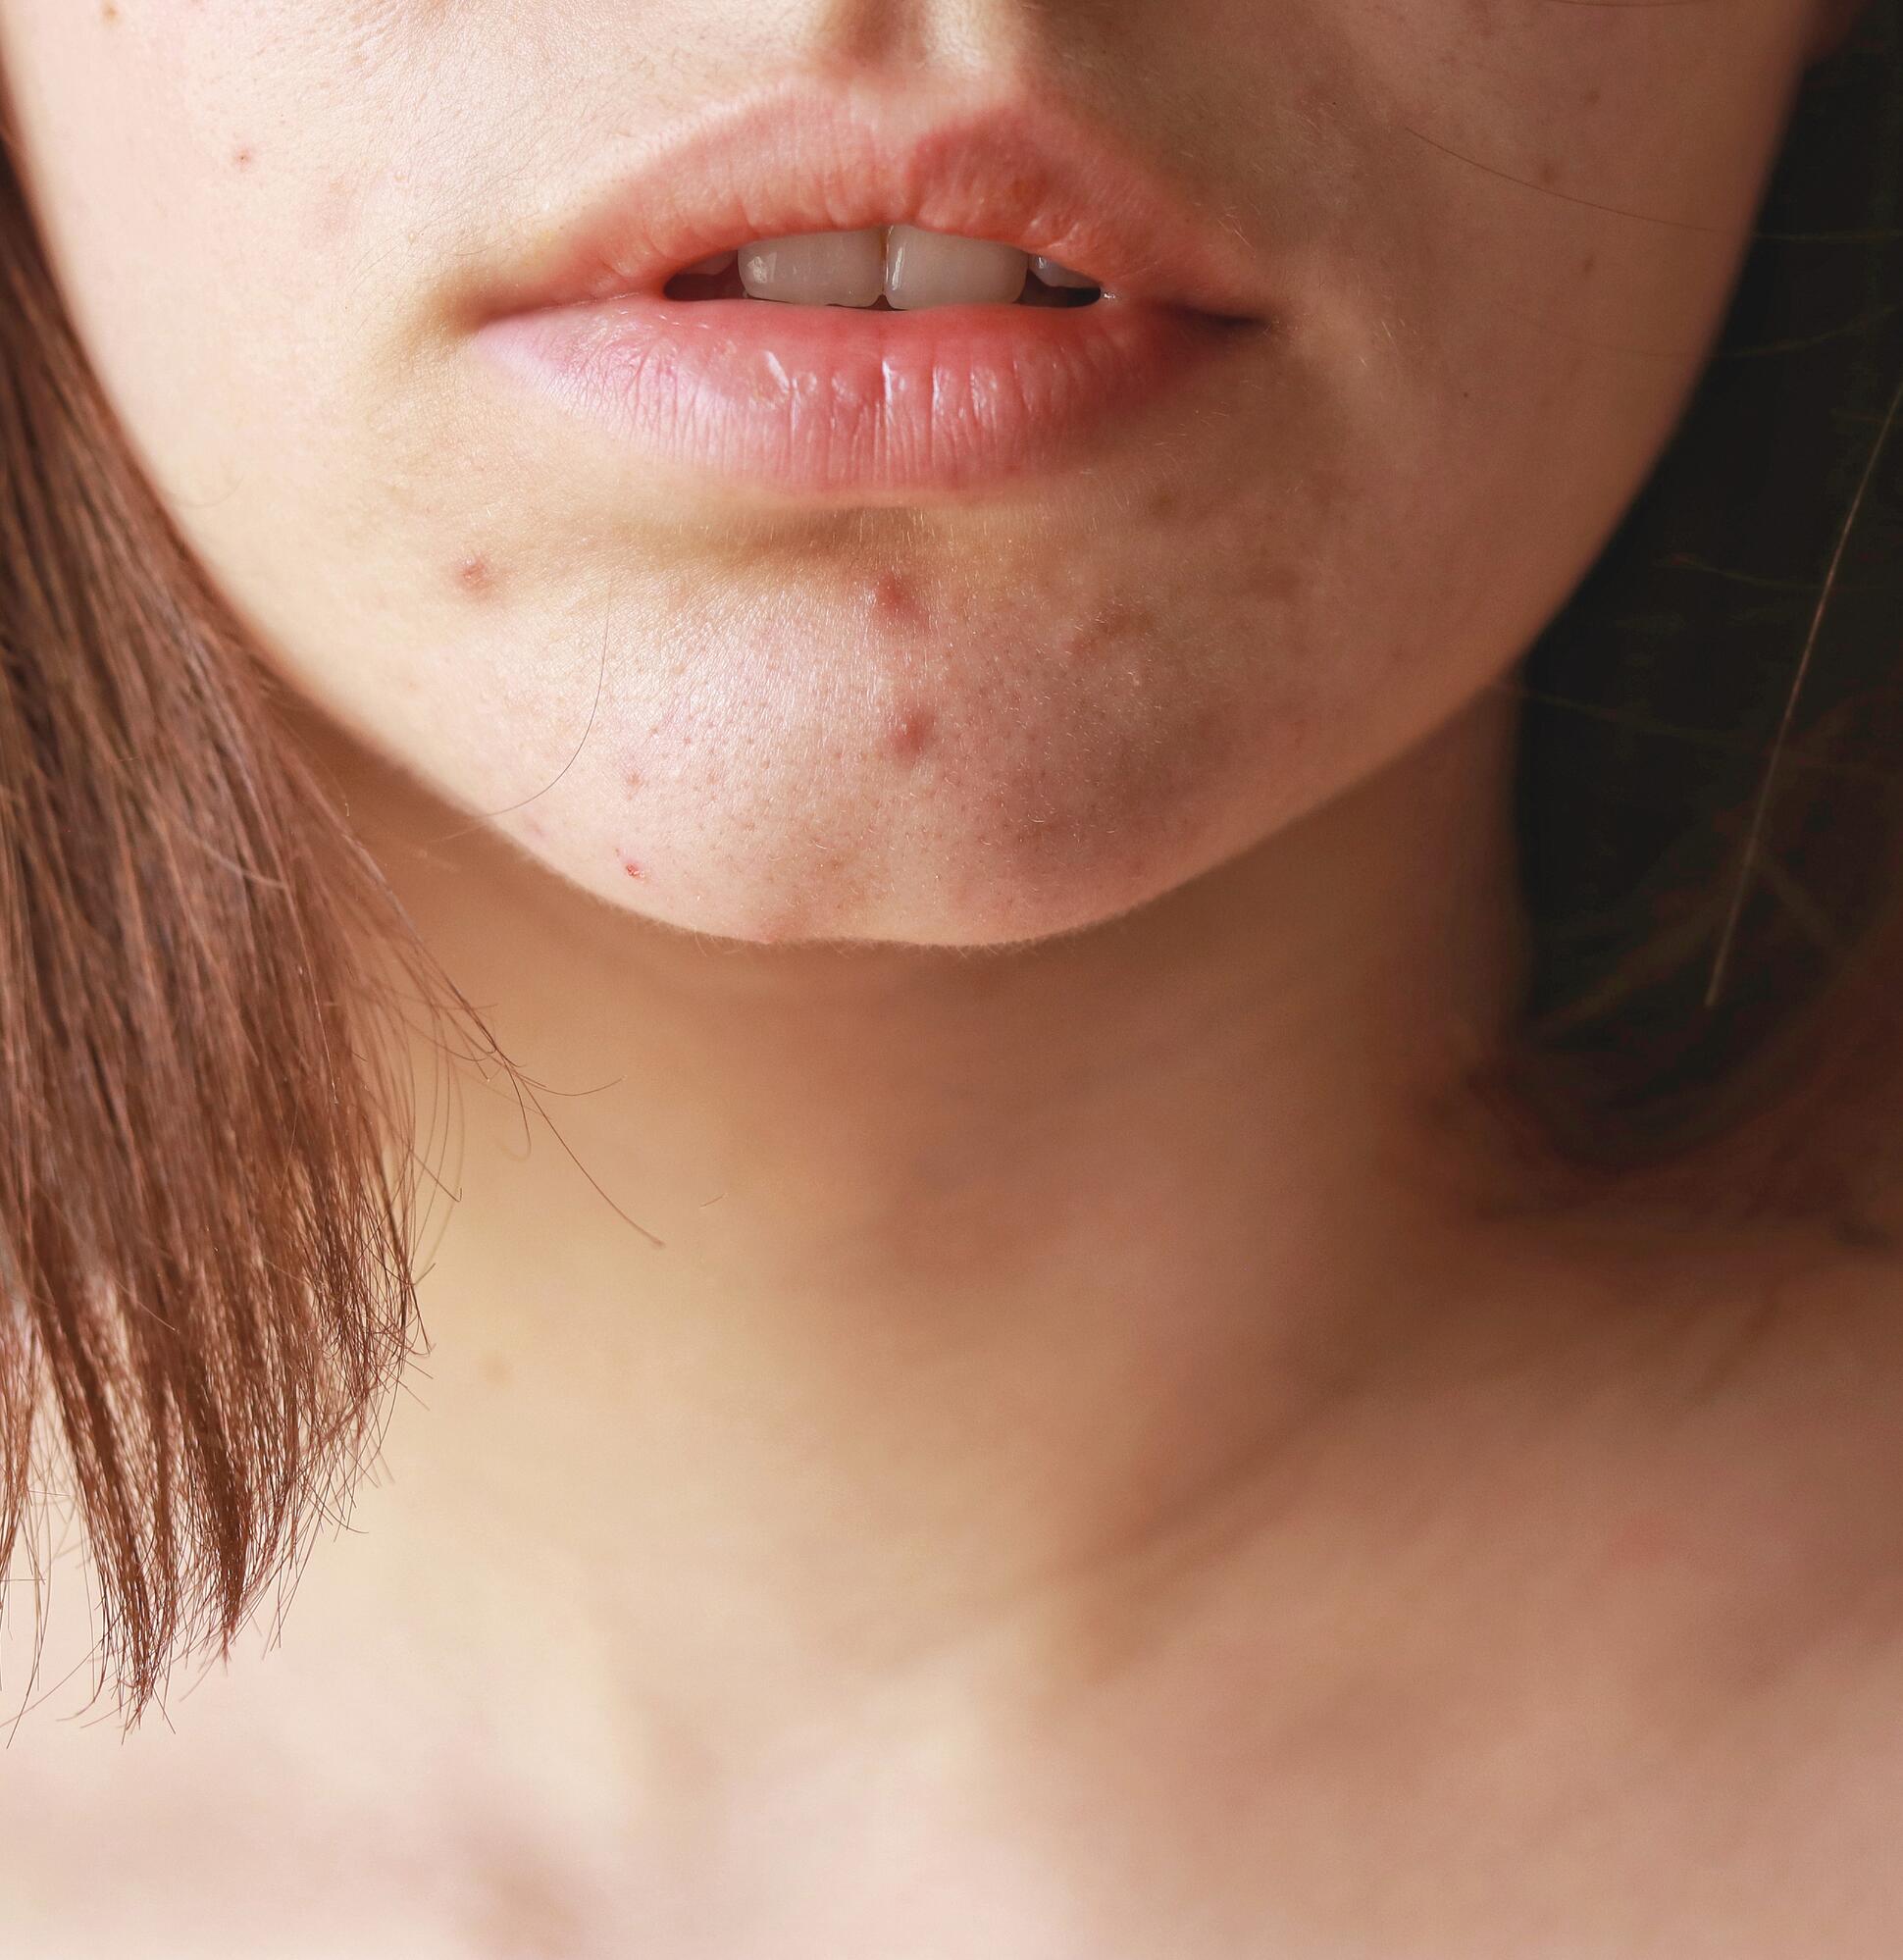 Impact psychologique de l'acné chez l’adulte